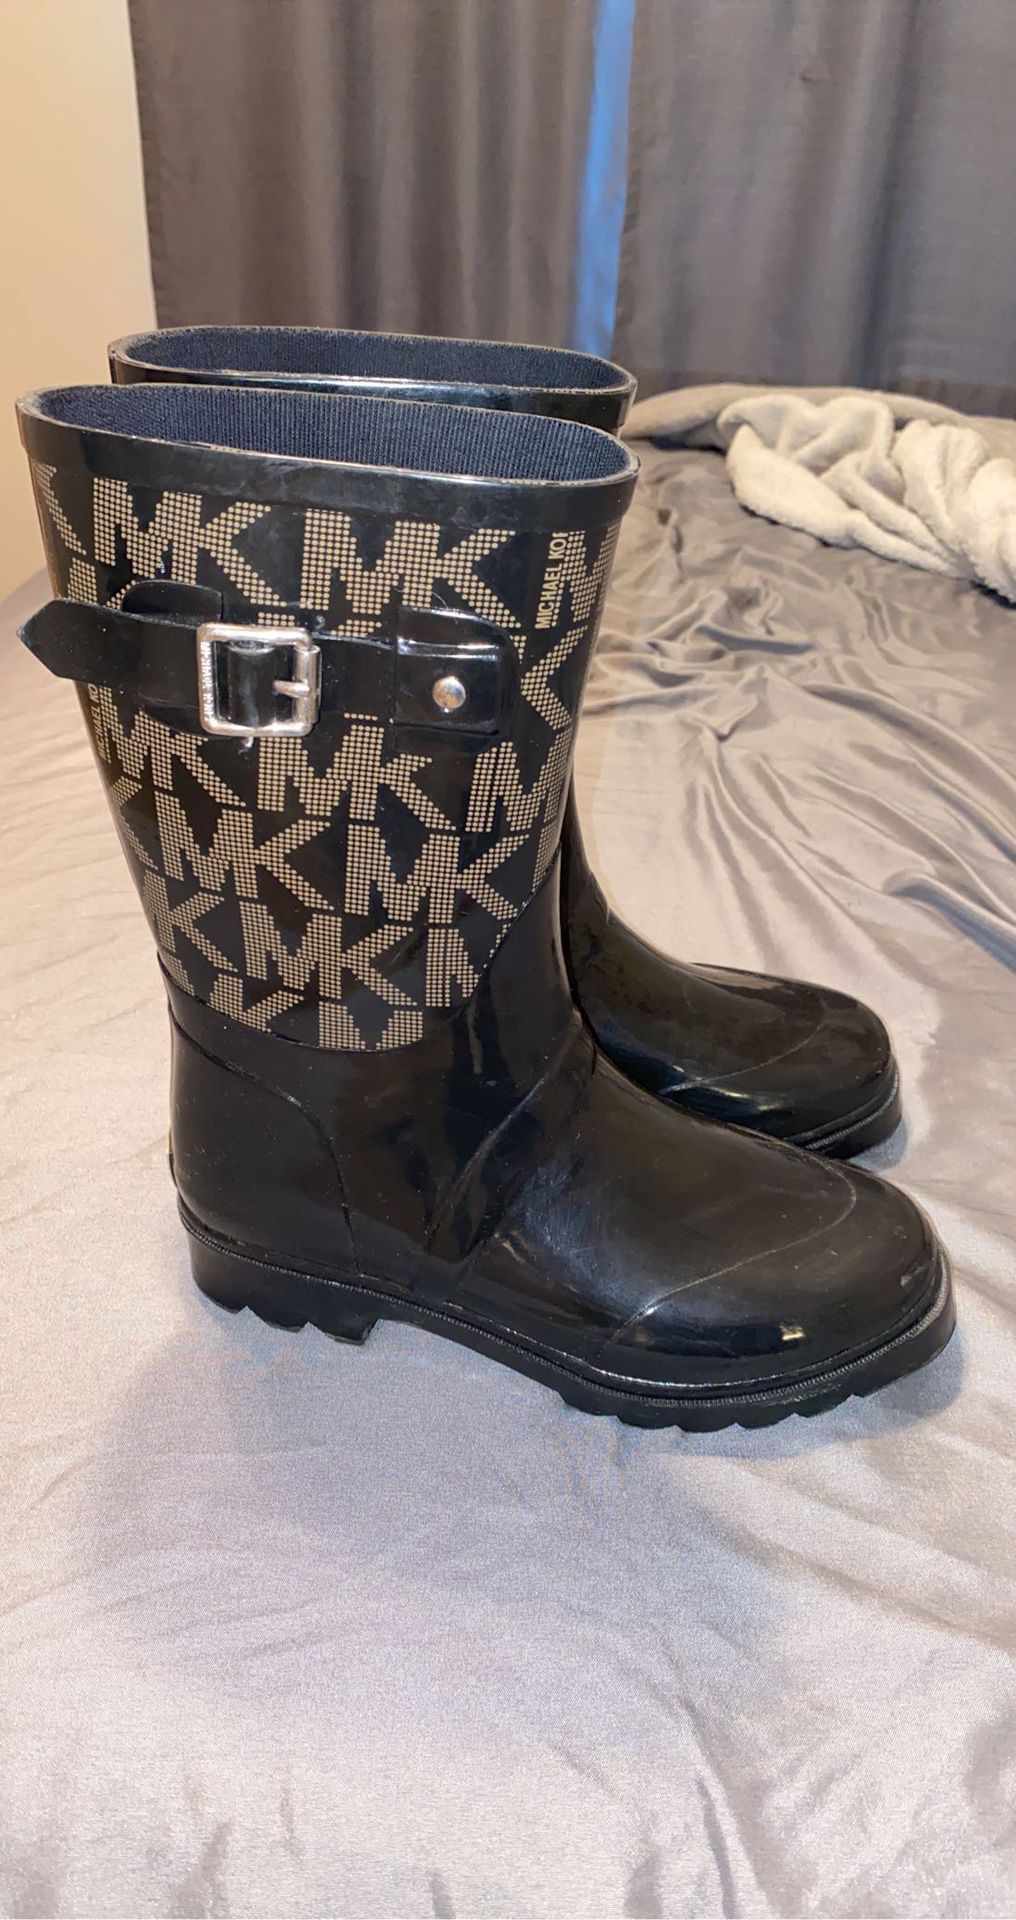 MK rain boots